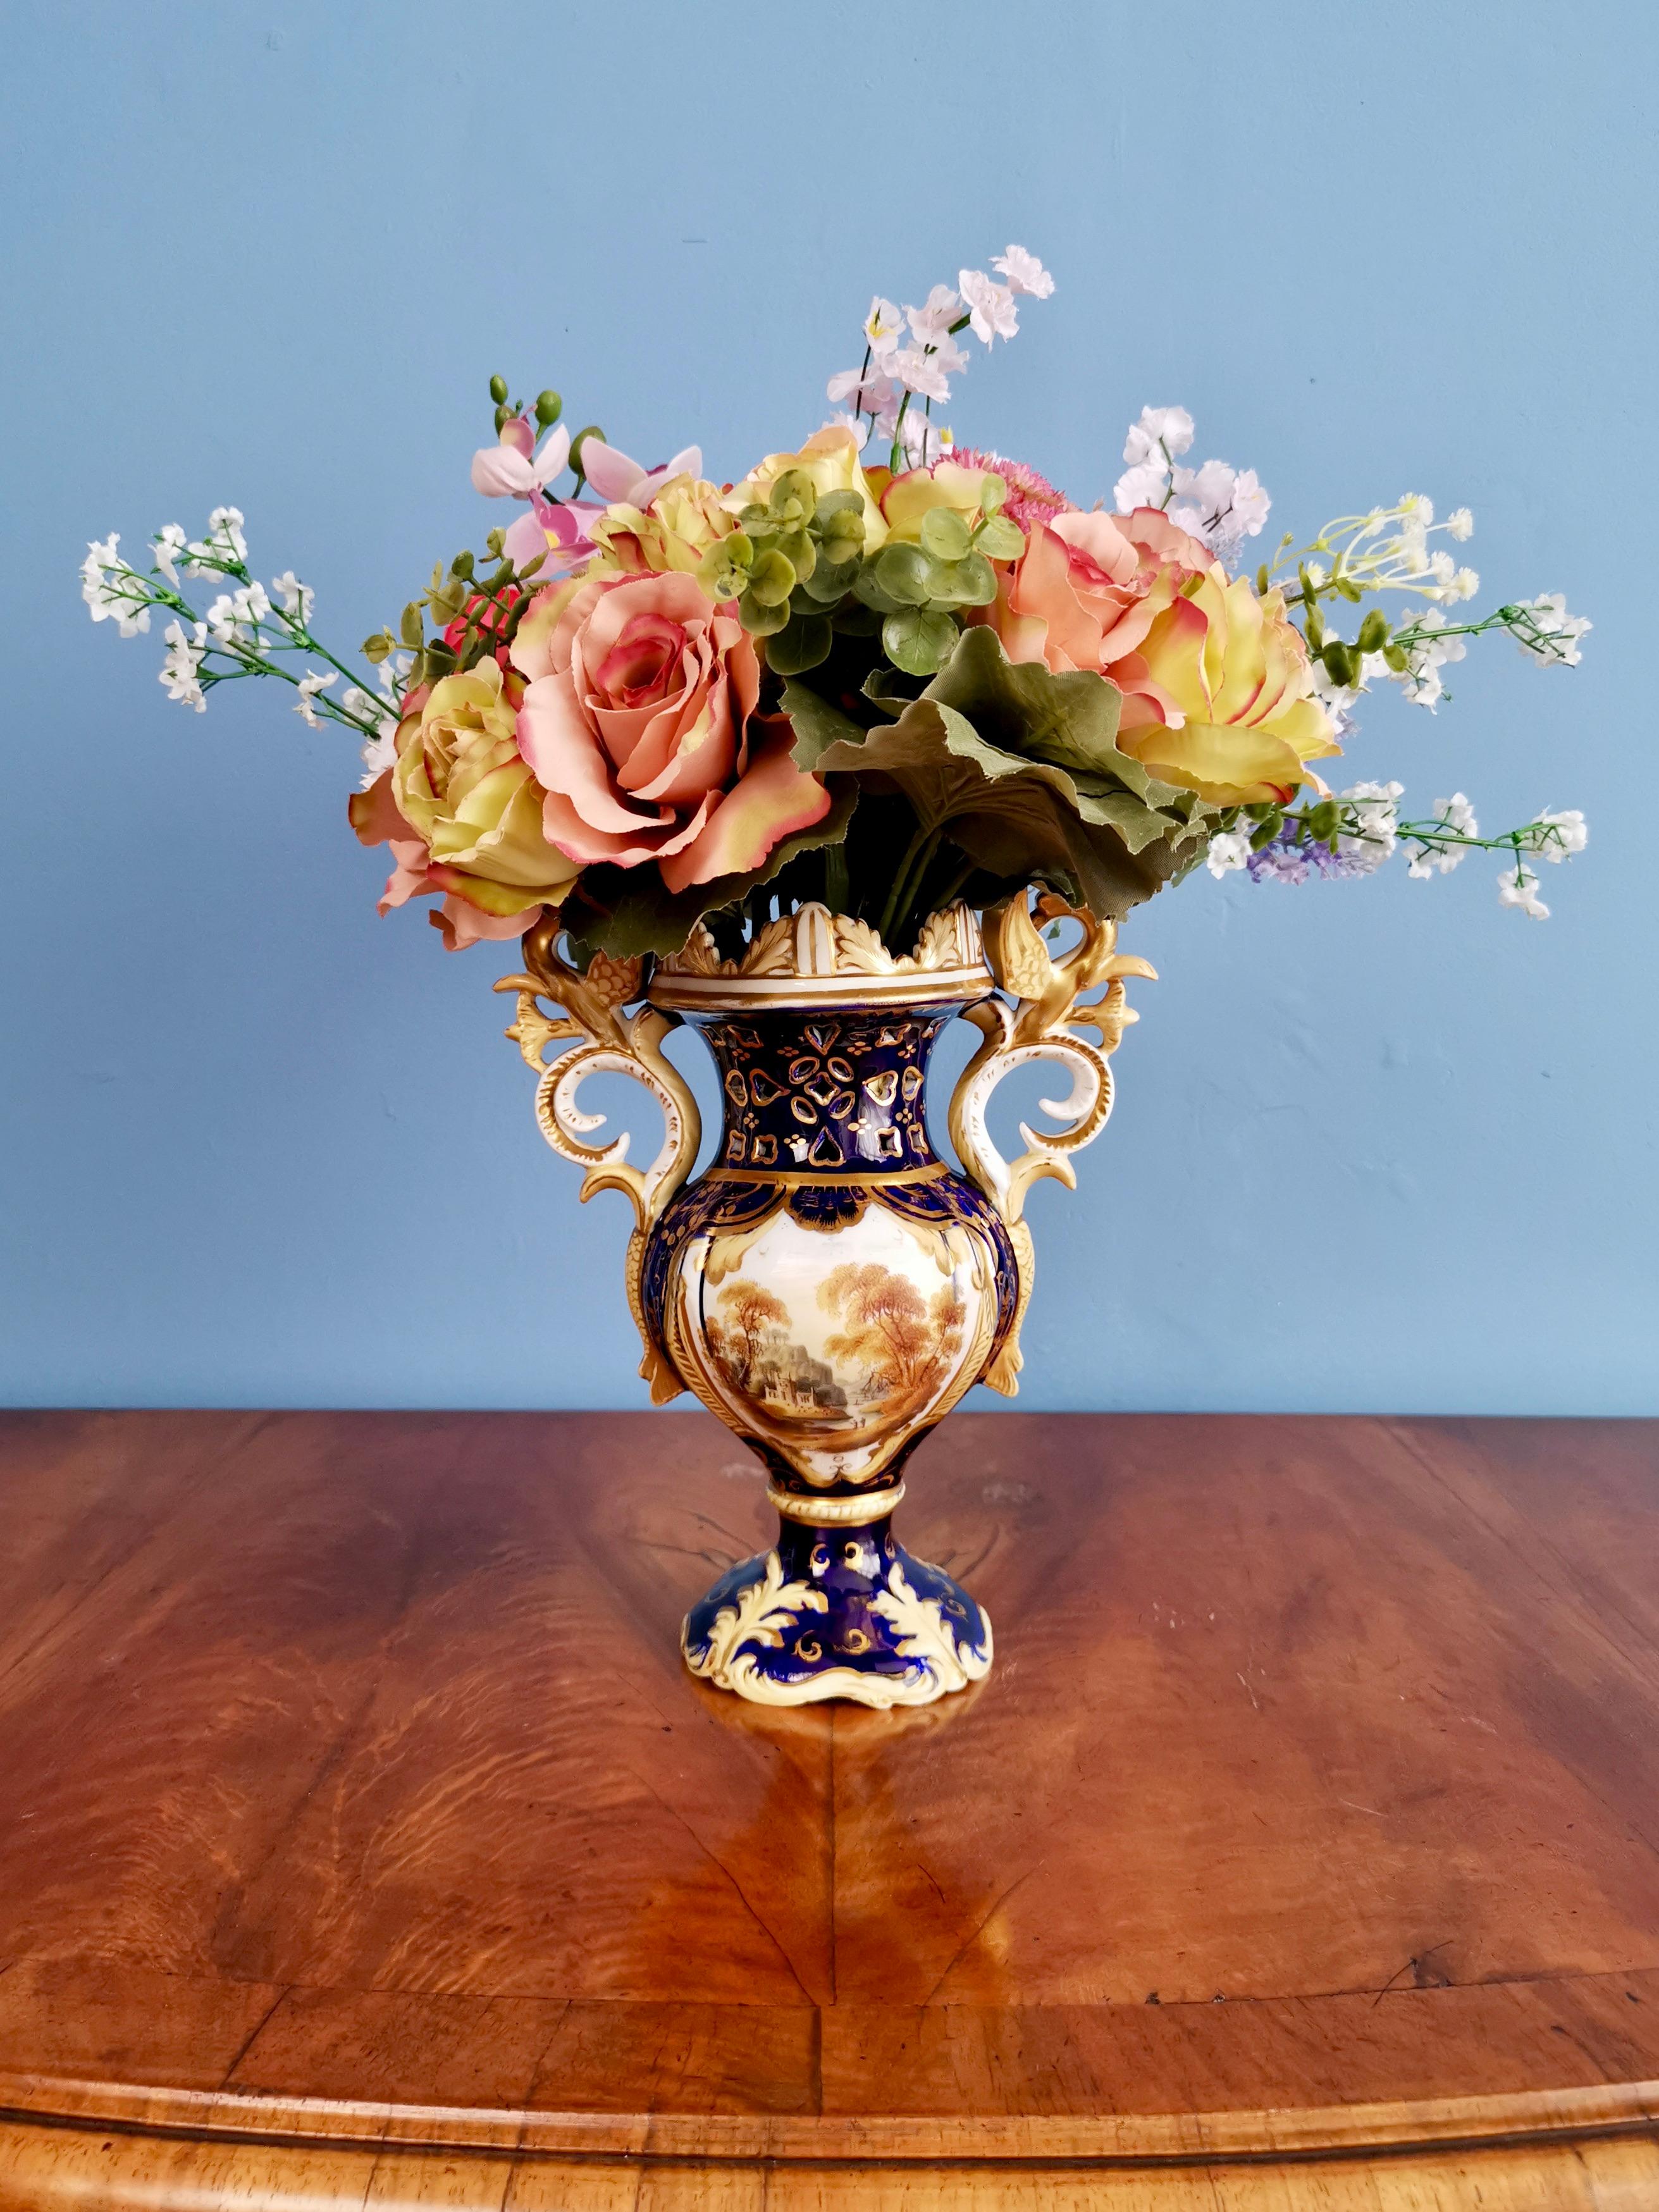 Angeboten wird eine schöne Porzellanvase von Samuel Alcock aus der Zeit des Rokoko-Revivals um 1840. Die Vase hat griffige Henkel, einen kobaltblauen Grund, eine üppige Vergoldung und eine schöne Landschaftsmalerei.

Samuel Alcock war zwischen den